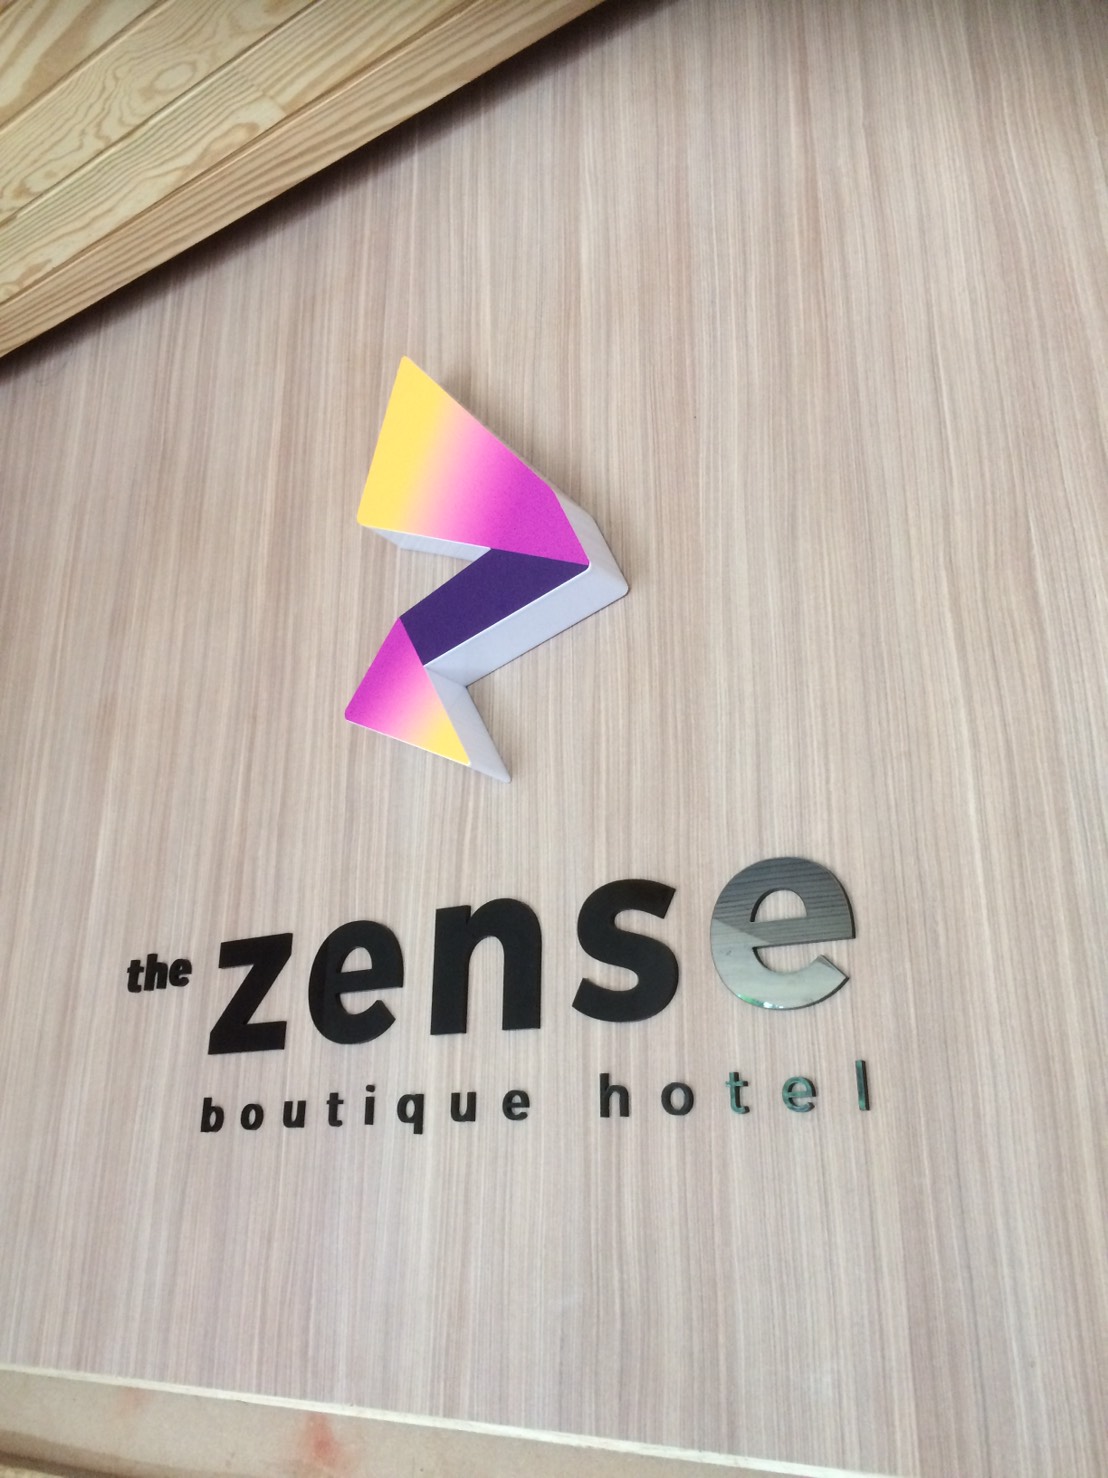 โลโห้หลังเคาท์เตอร์ โรงแรม The Zense boutique hotel พิษณุโลก